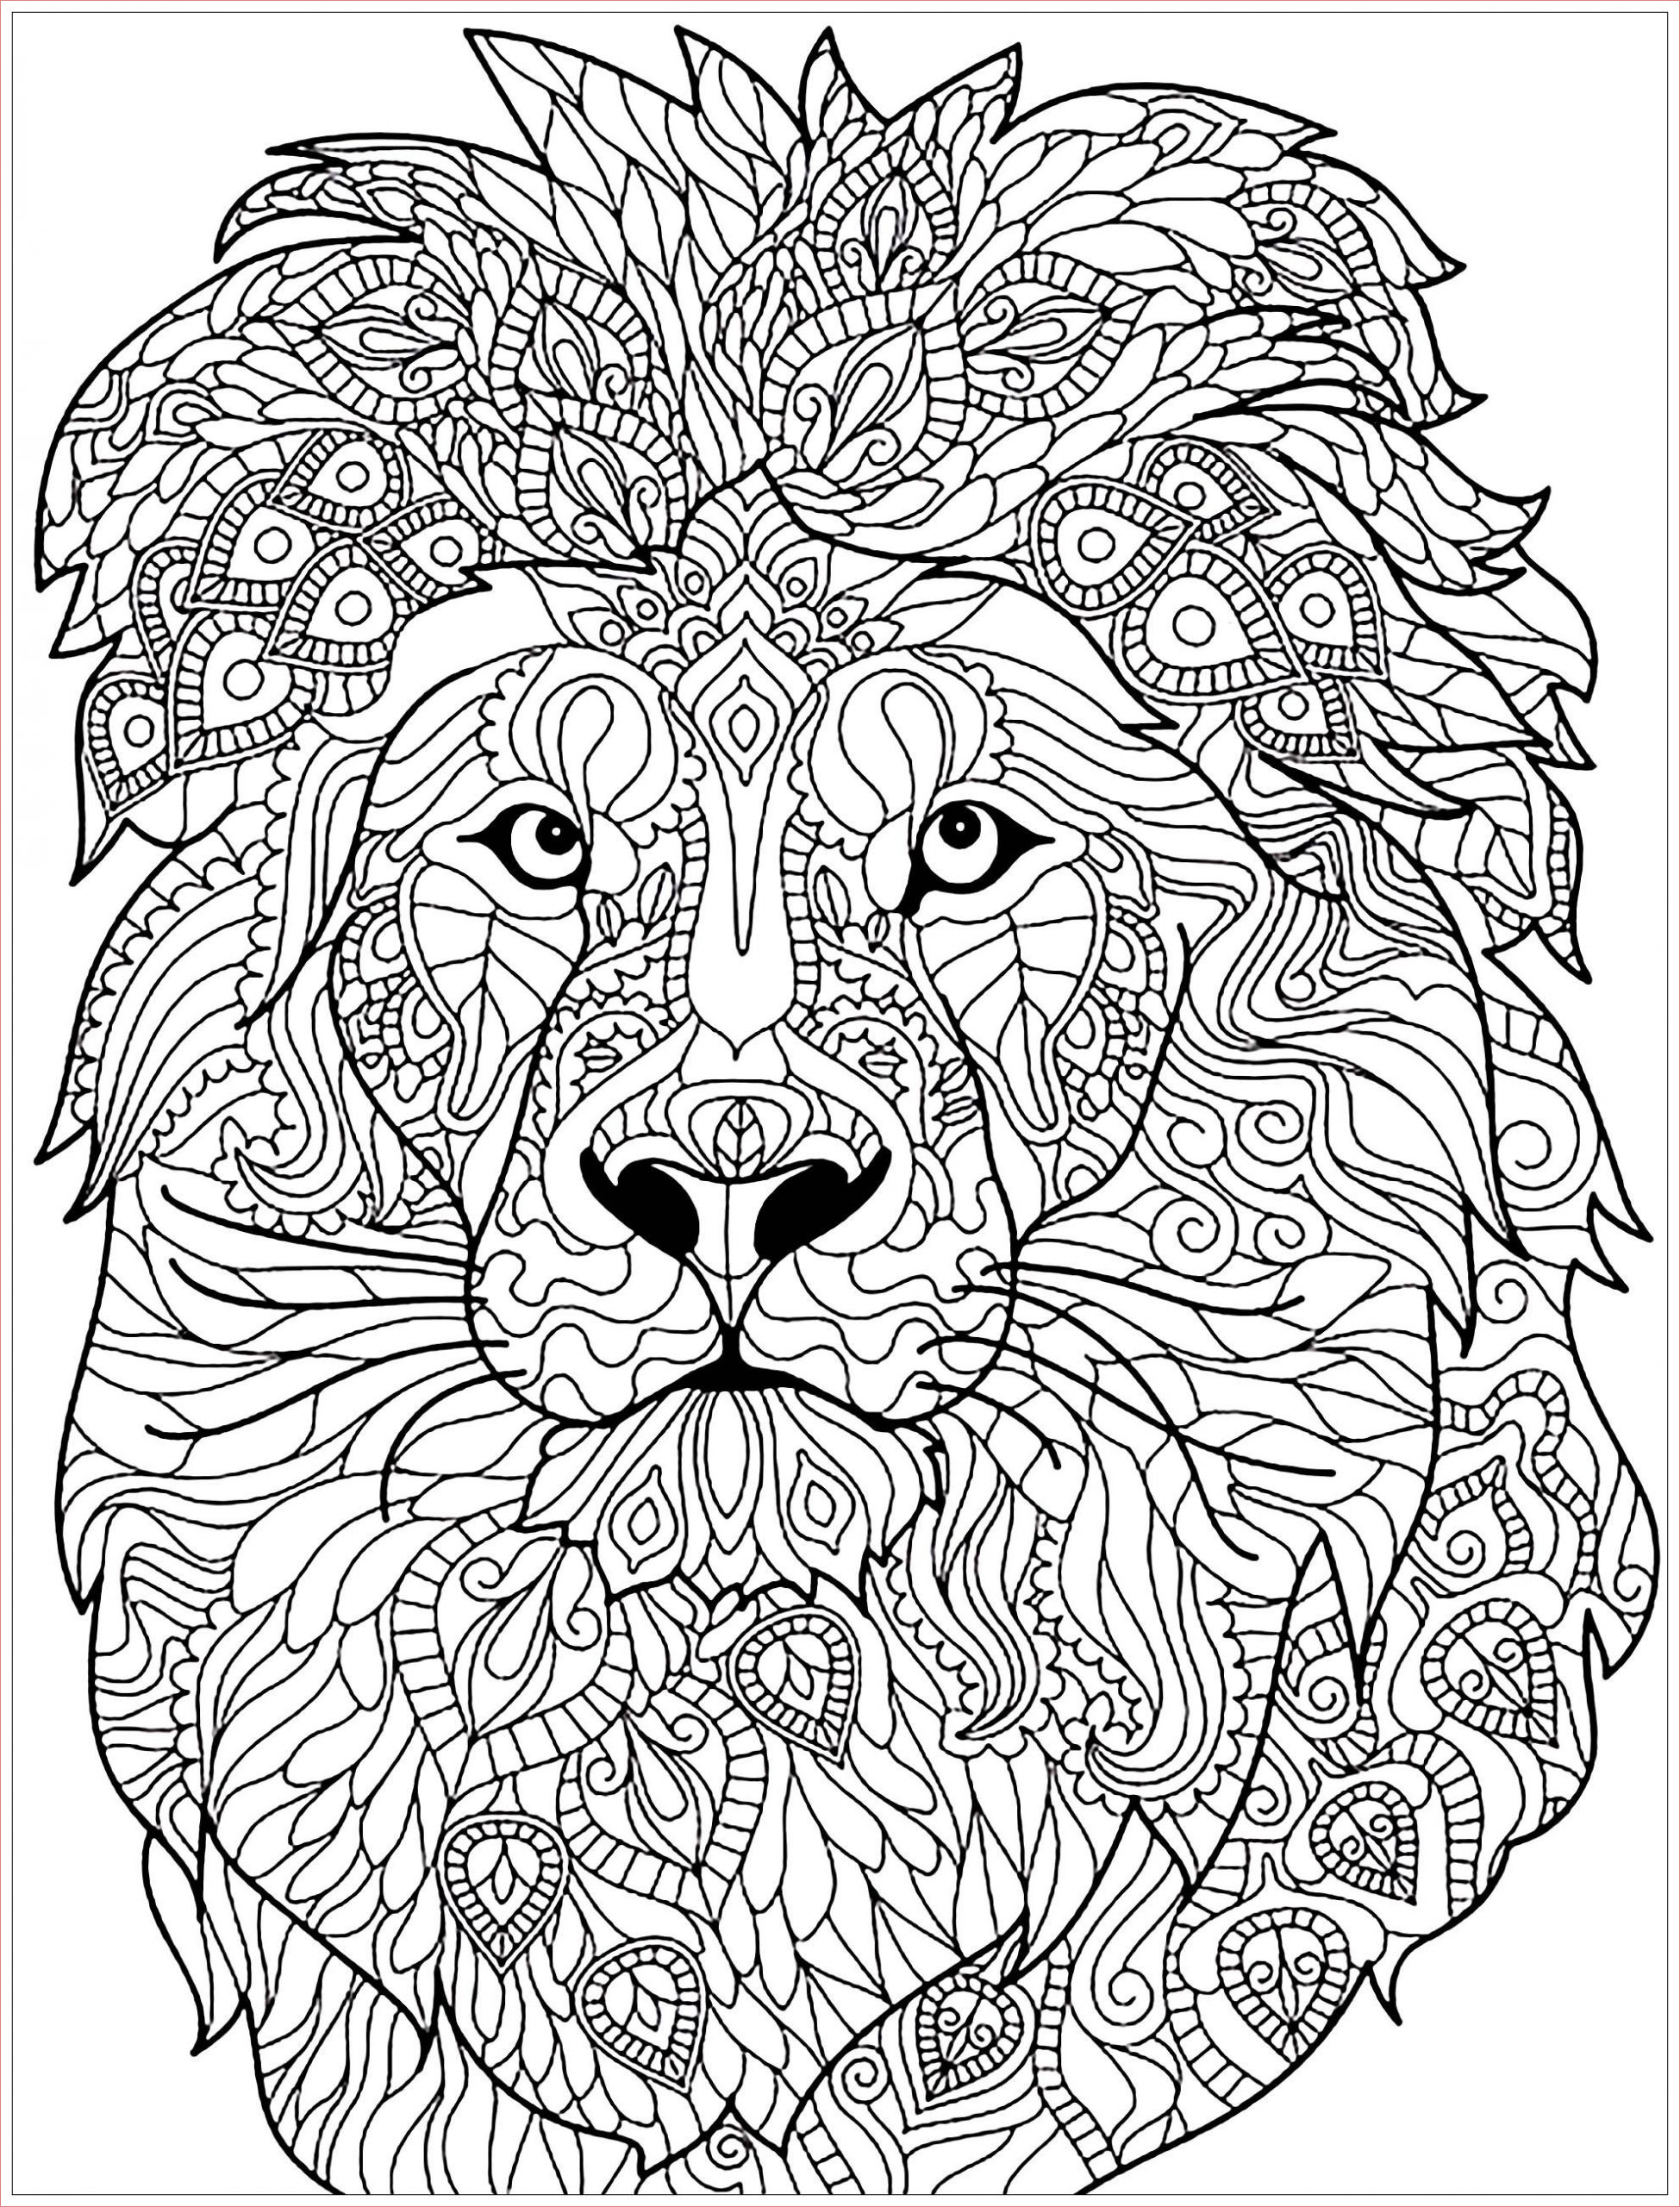 9 brillant coloriage tete de lion images